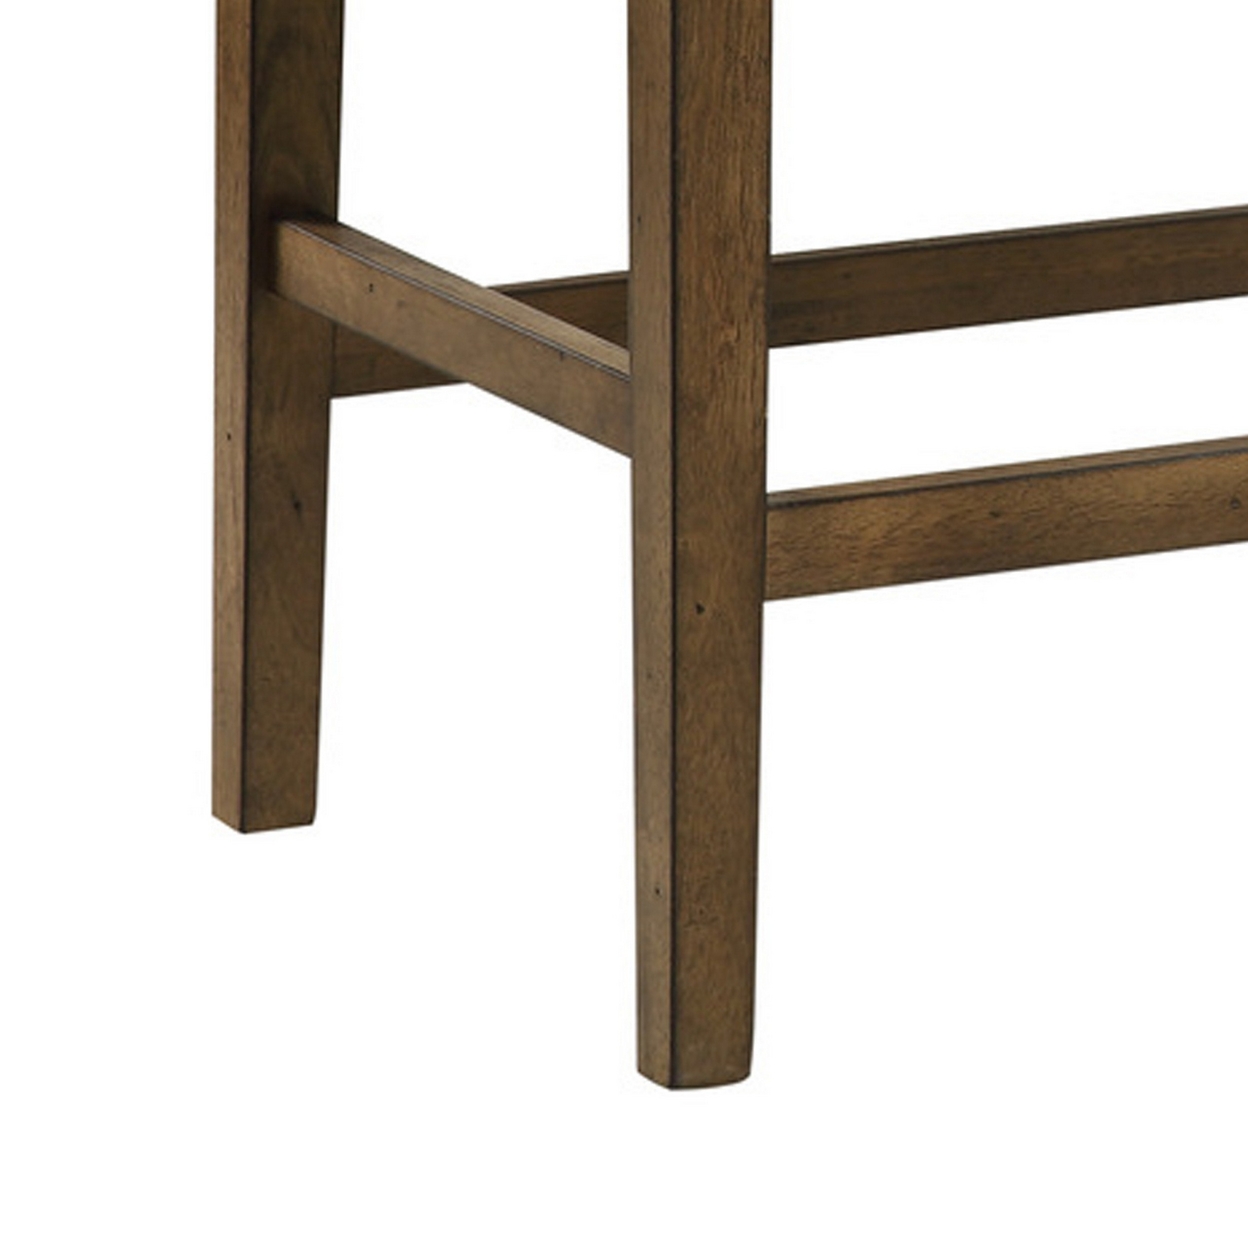 Carl 39 Inch Two Tone Counter Bench, Gray Fabric Seat, Light Oak Wood- Saltoro Sherpi